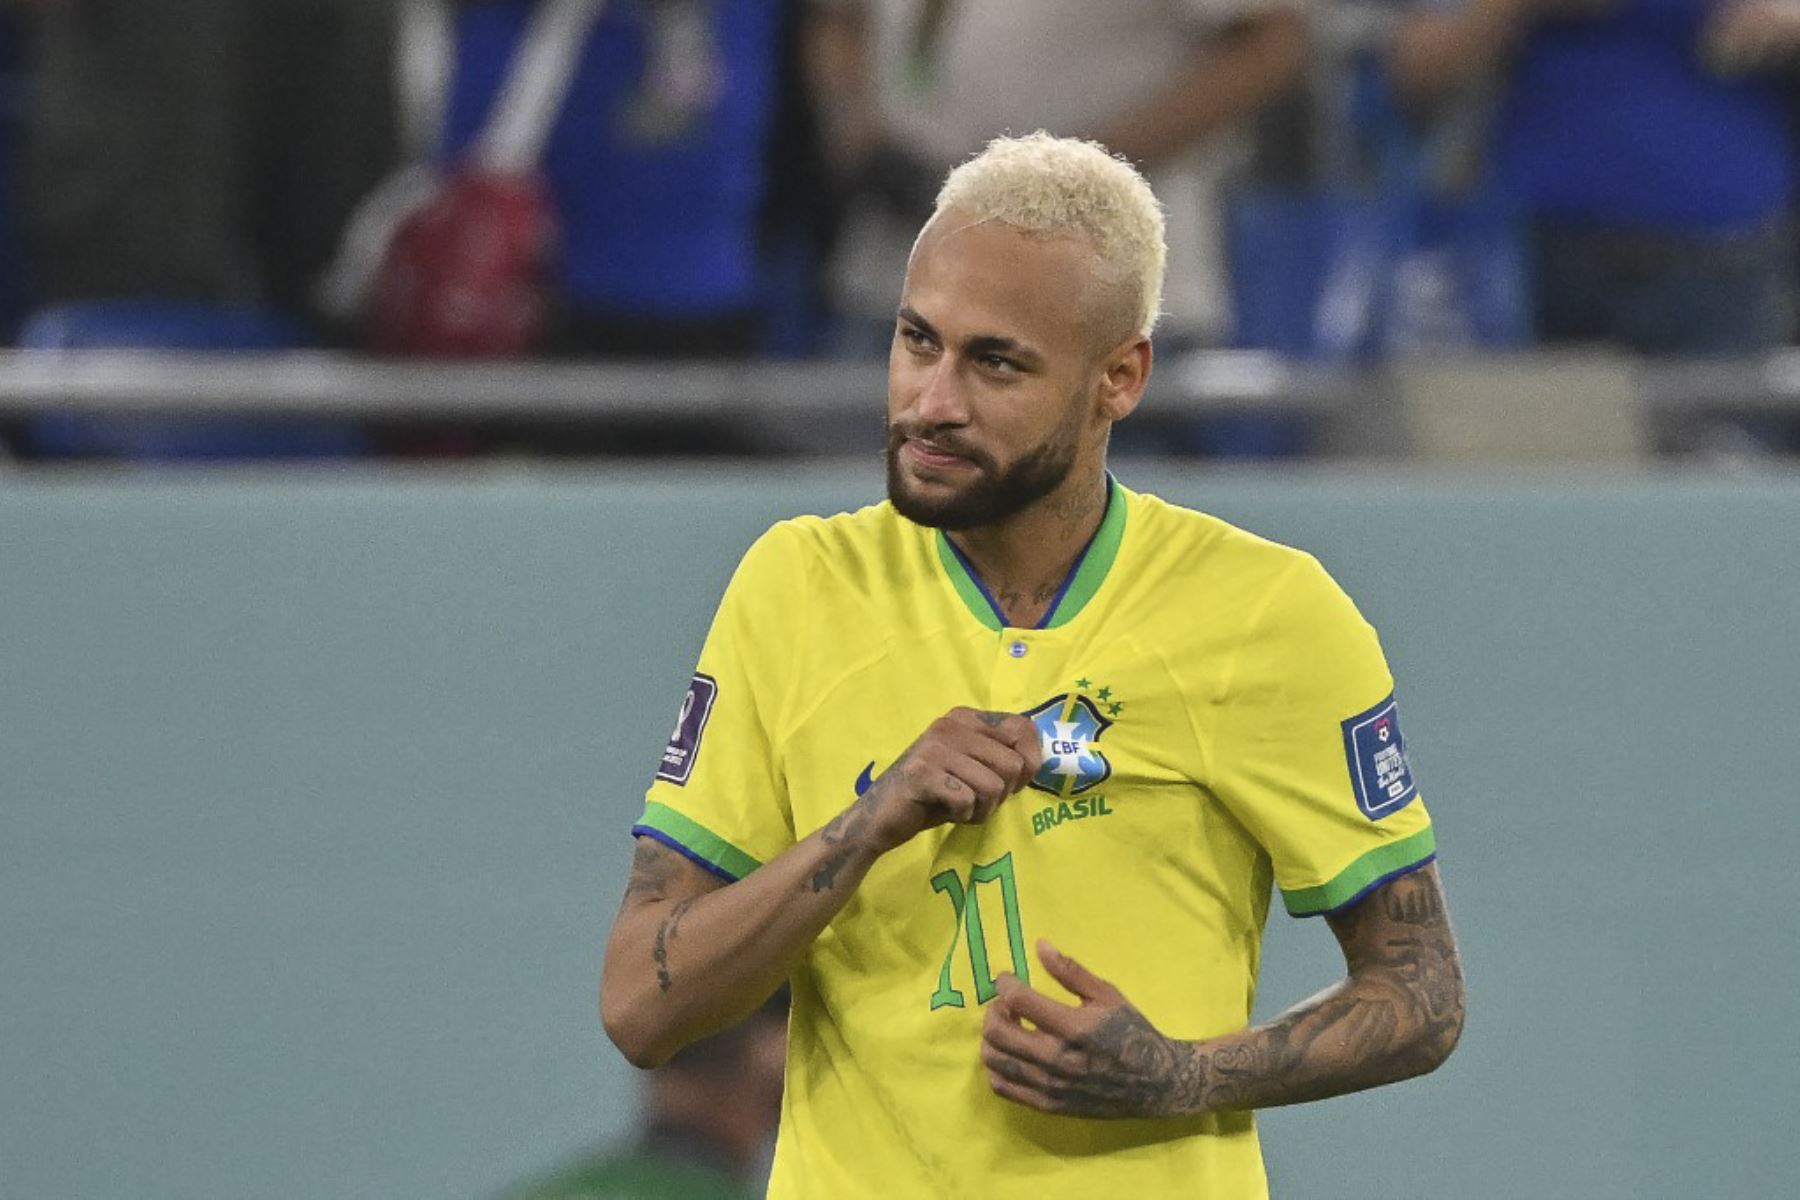 El delantero brasileño #10 Neymar celebra después de clasificar a la siguiente ronda después de derrotar a Corea del Sur 4-1 en el partido de fútbol de octavos de final de la Copa Mundial de Catar 2022 entre Brasil y Corea del Sur en el Estadio 974 en Doha

Foto:AFP